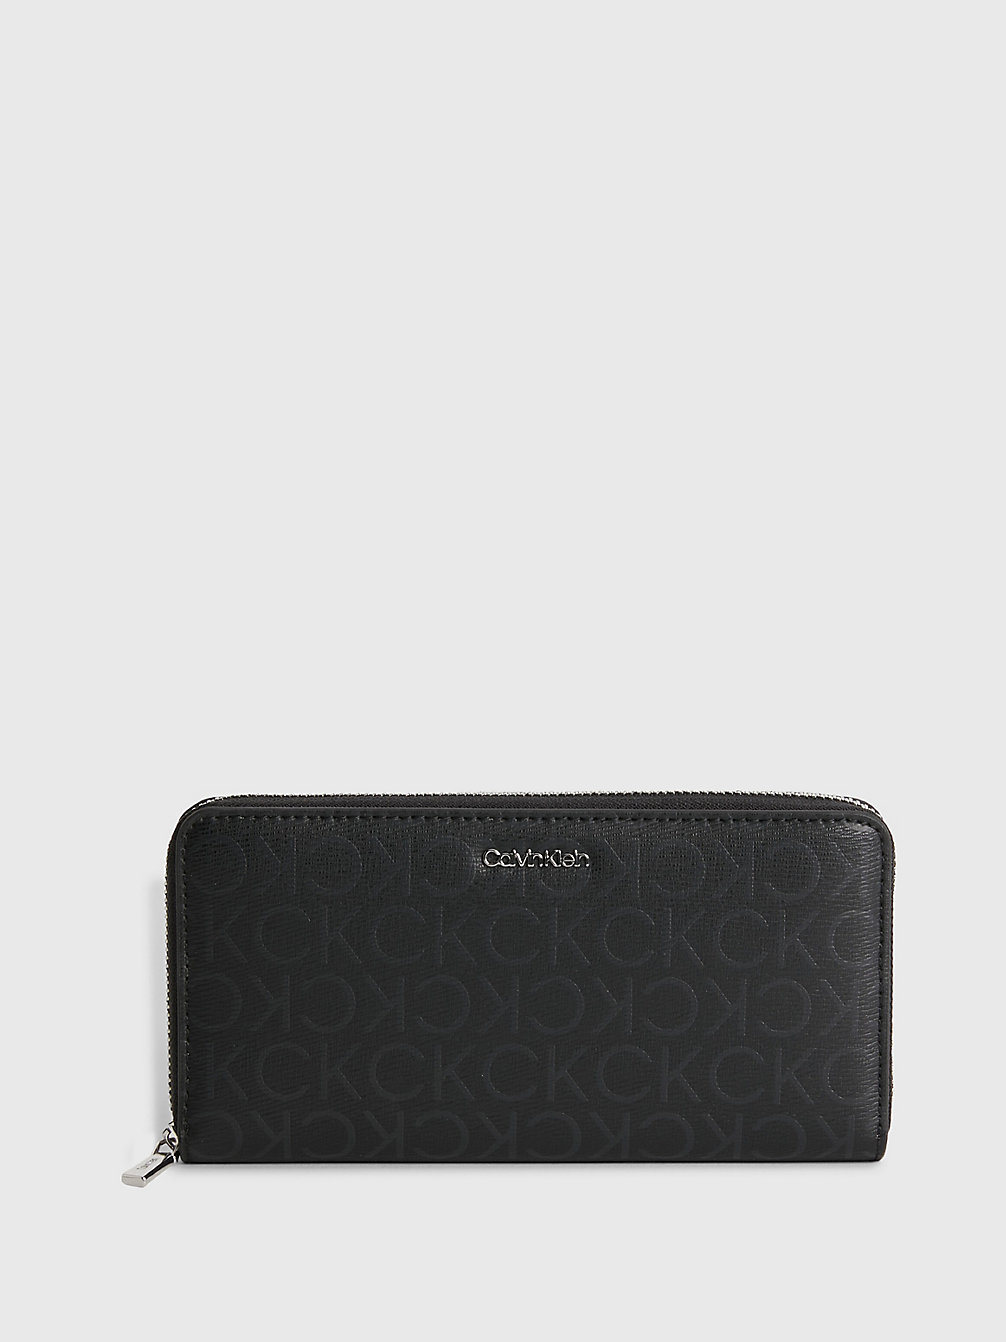 BLACK MONO Großes Rfid-Portemonnaie Mit Rundum-Reißverschluss Aus Recyceltem Material undefined Damen Calvin Klein